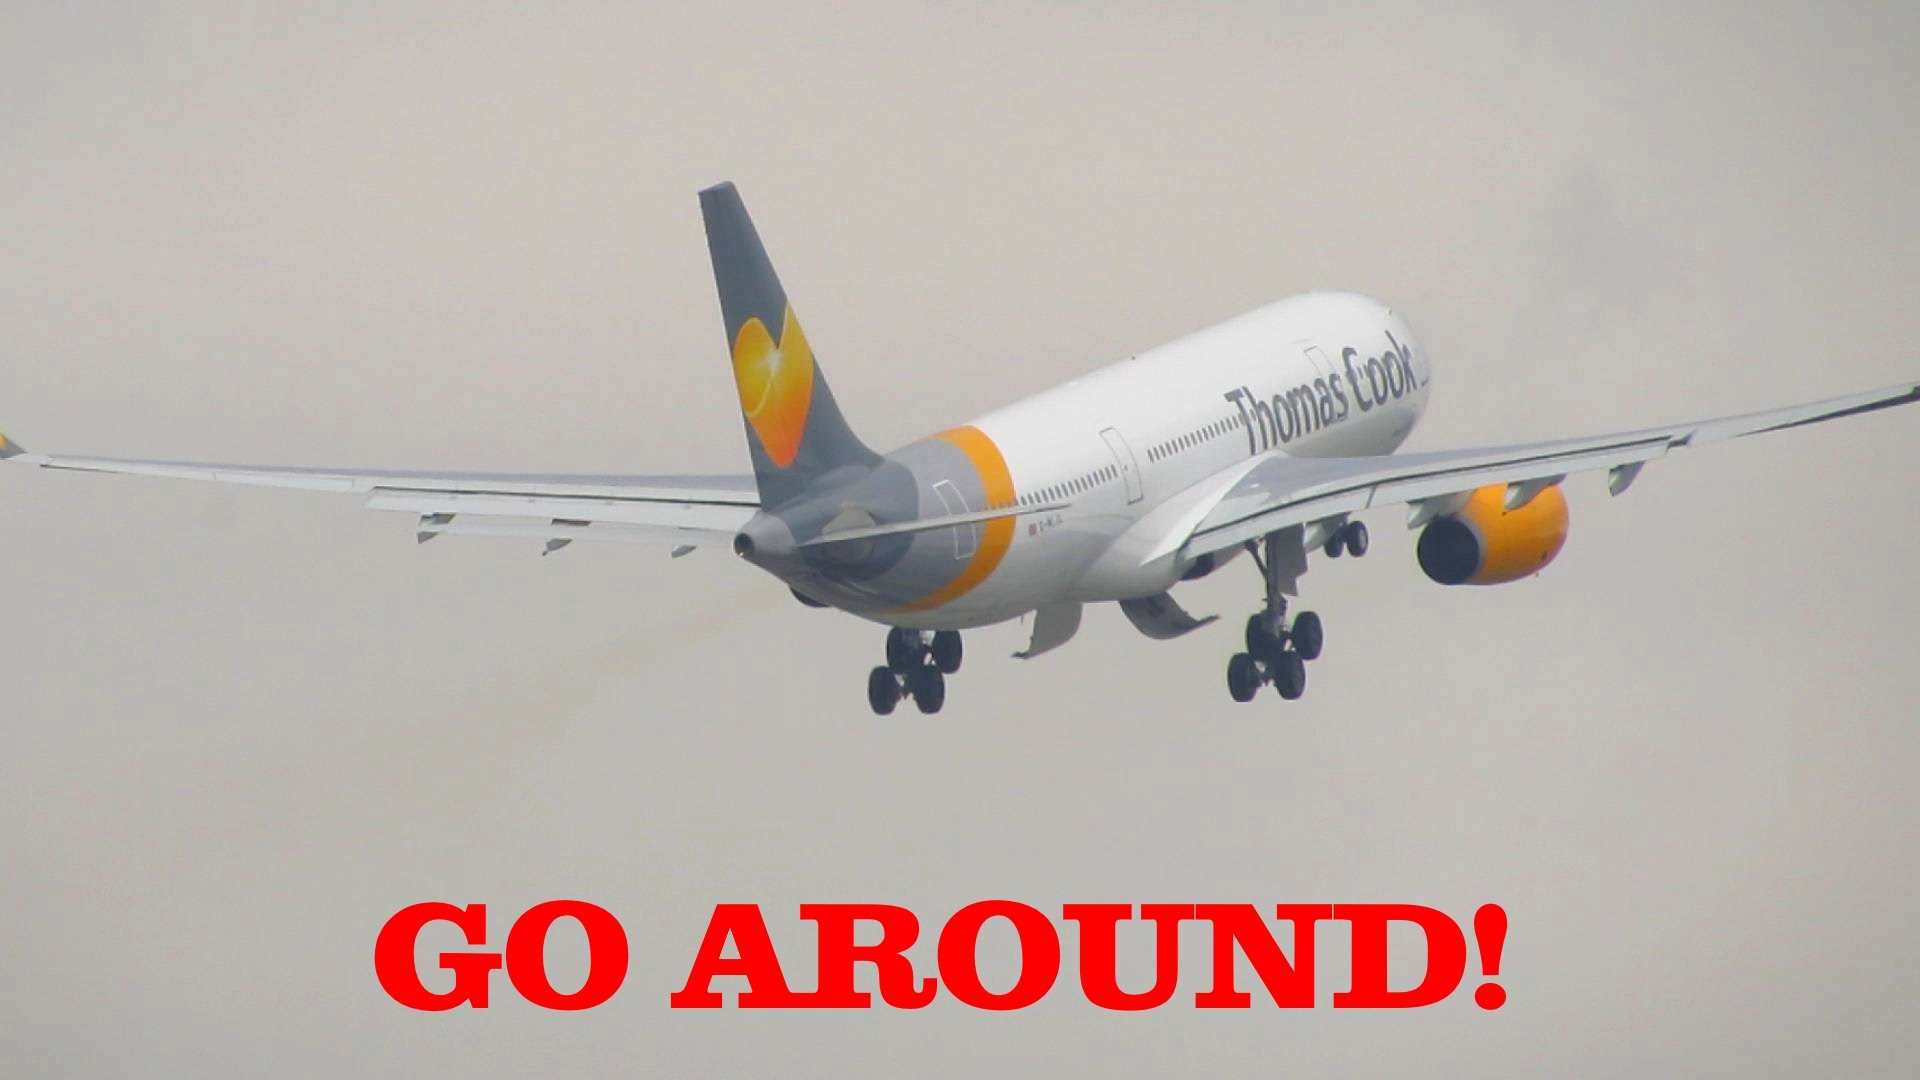 GO AROUND! Thomas Cook A330-200 [G-MLJL] Go Around & Wind Change ...